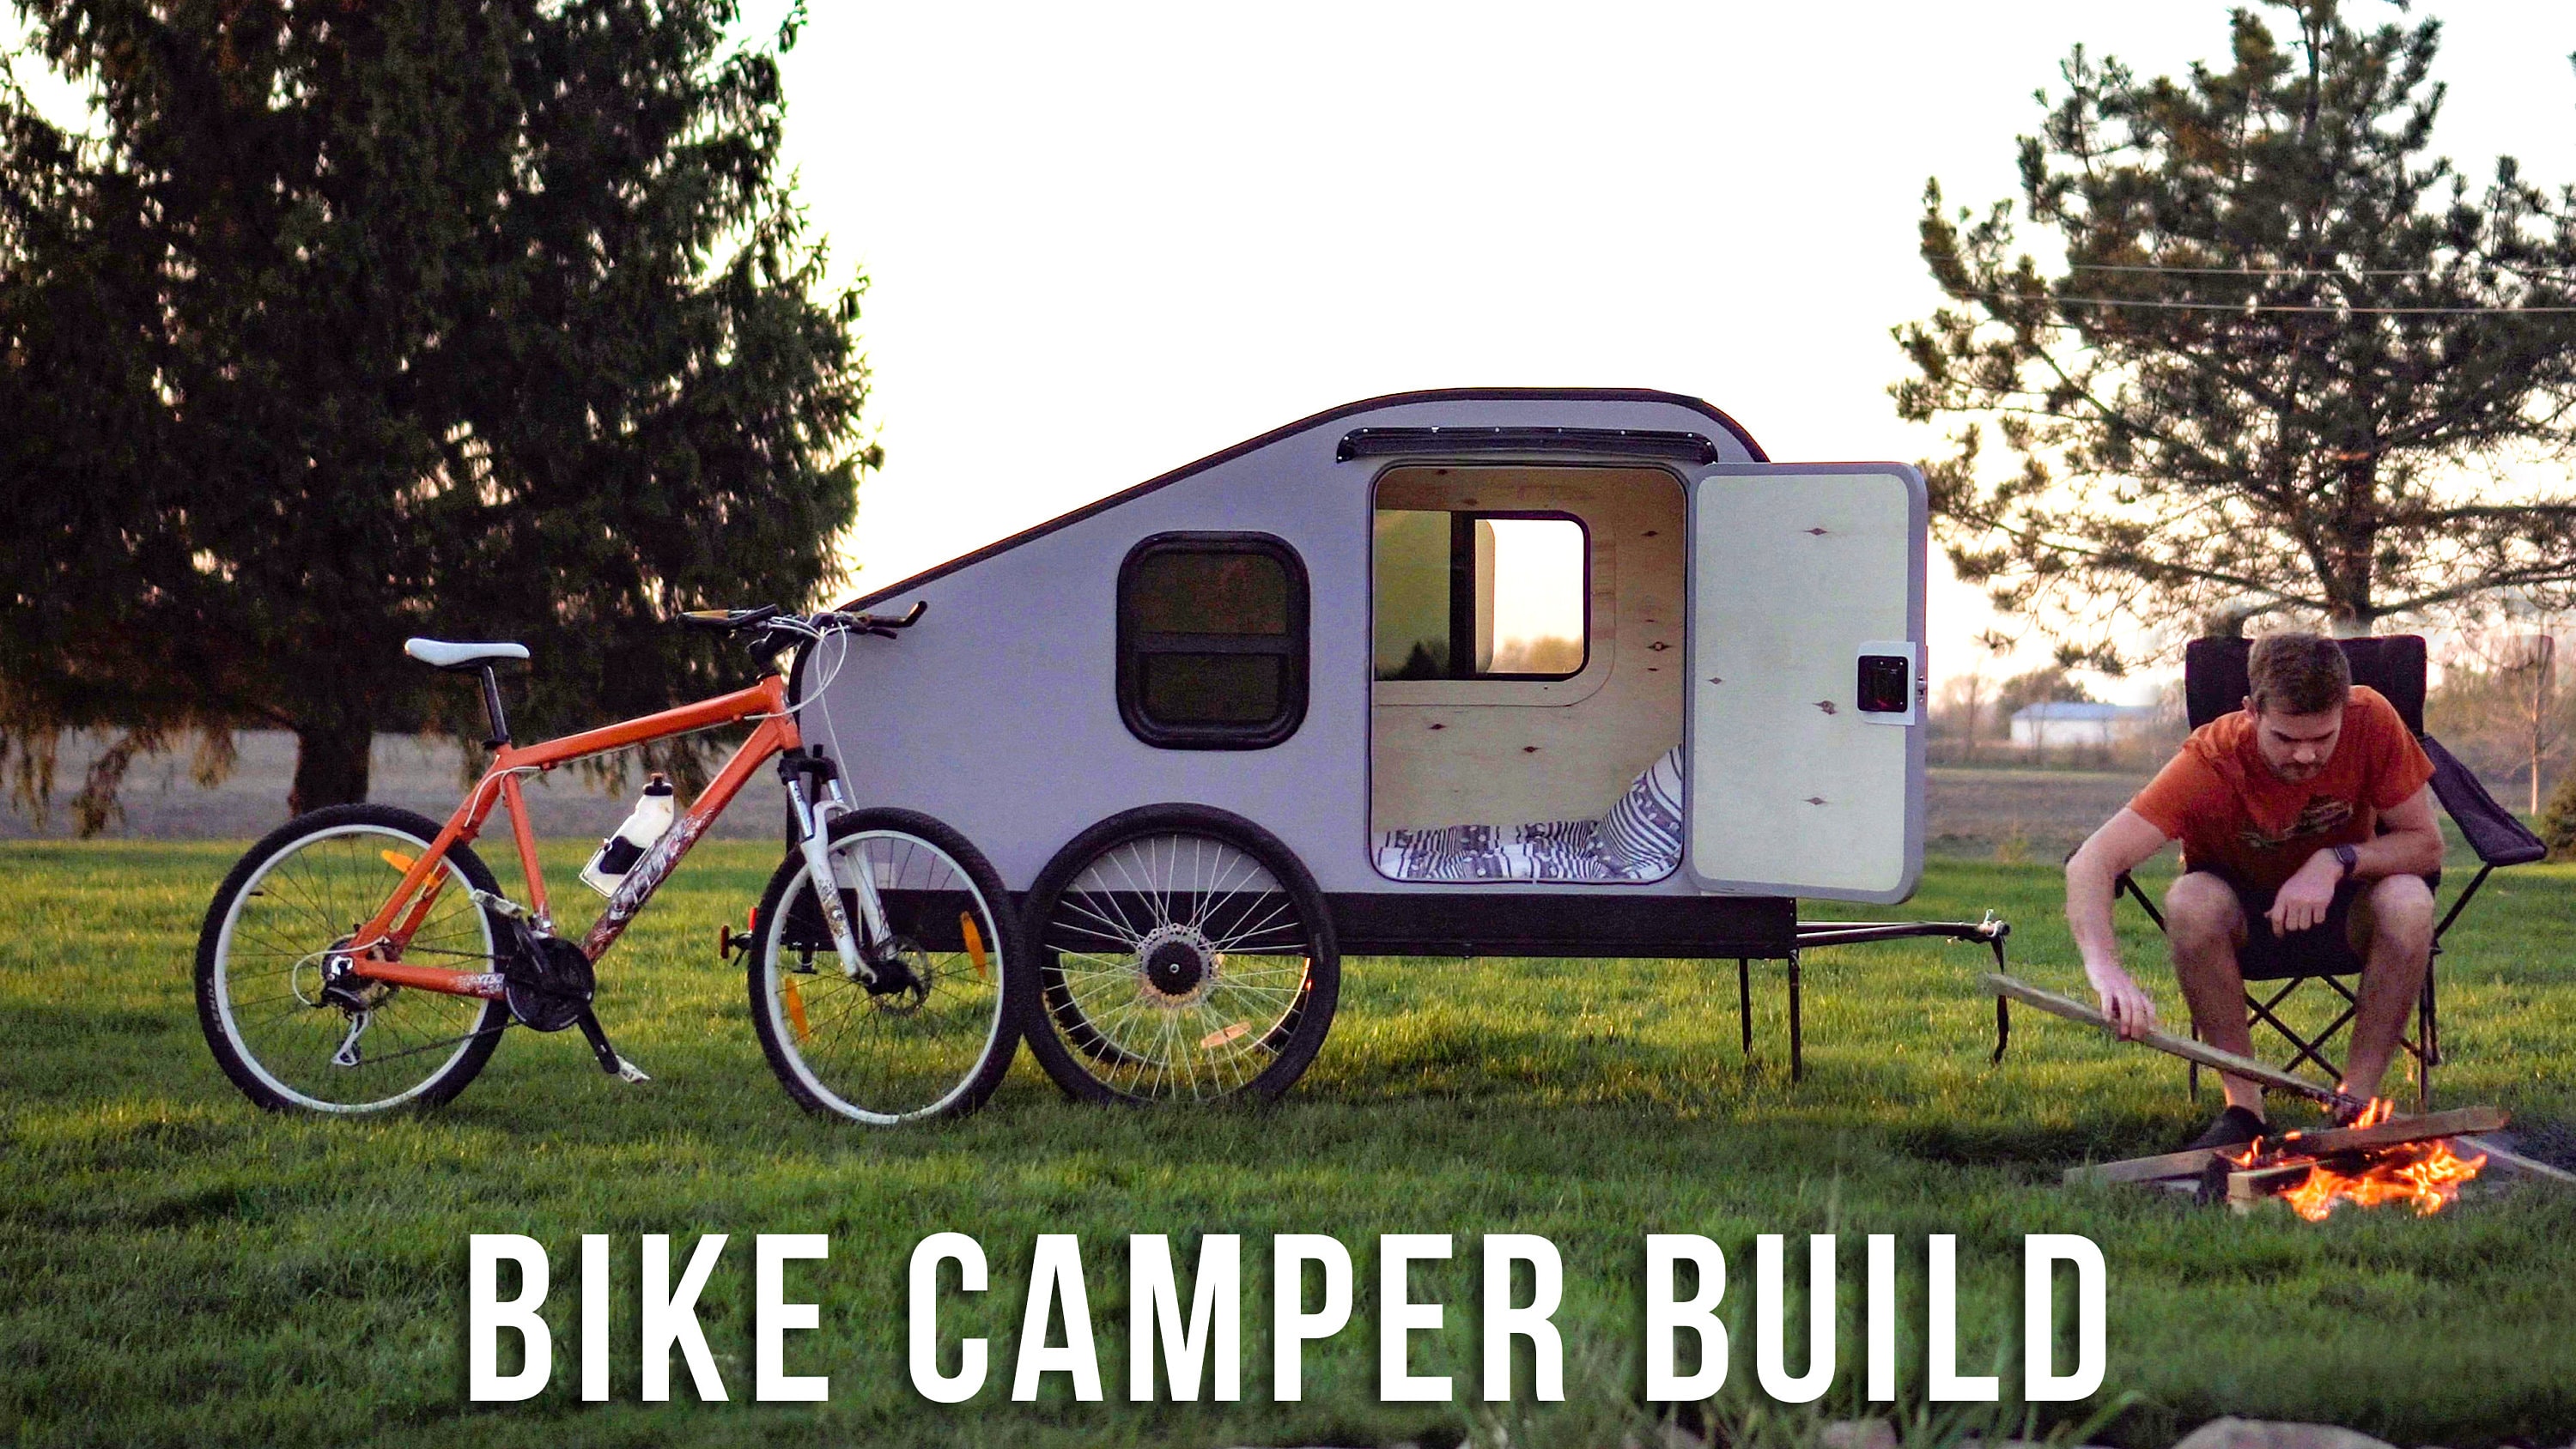 Bike camper trailer for sale  